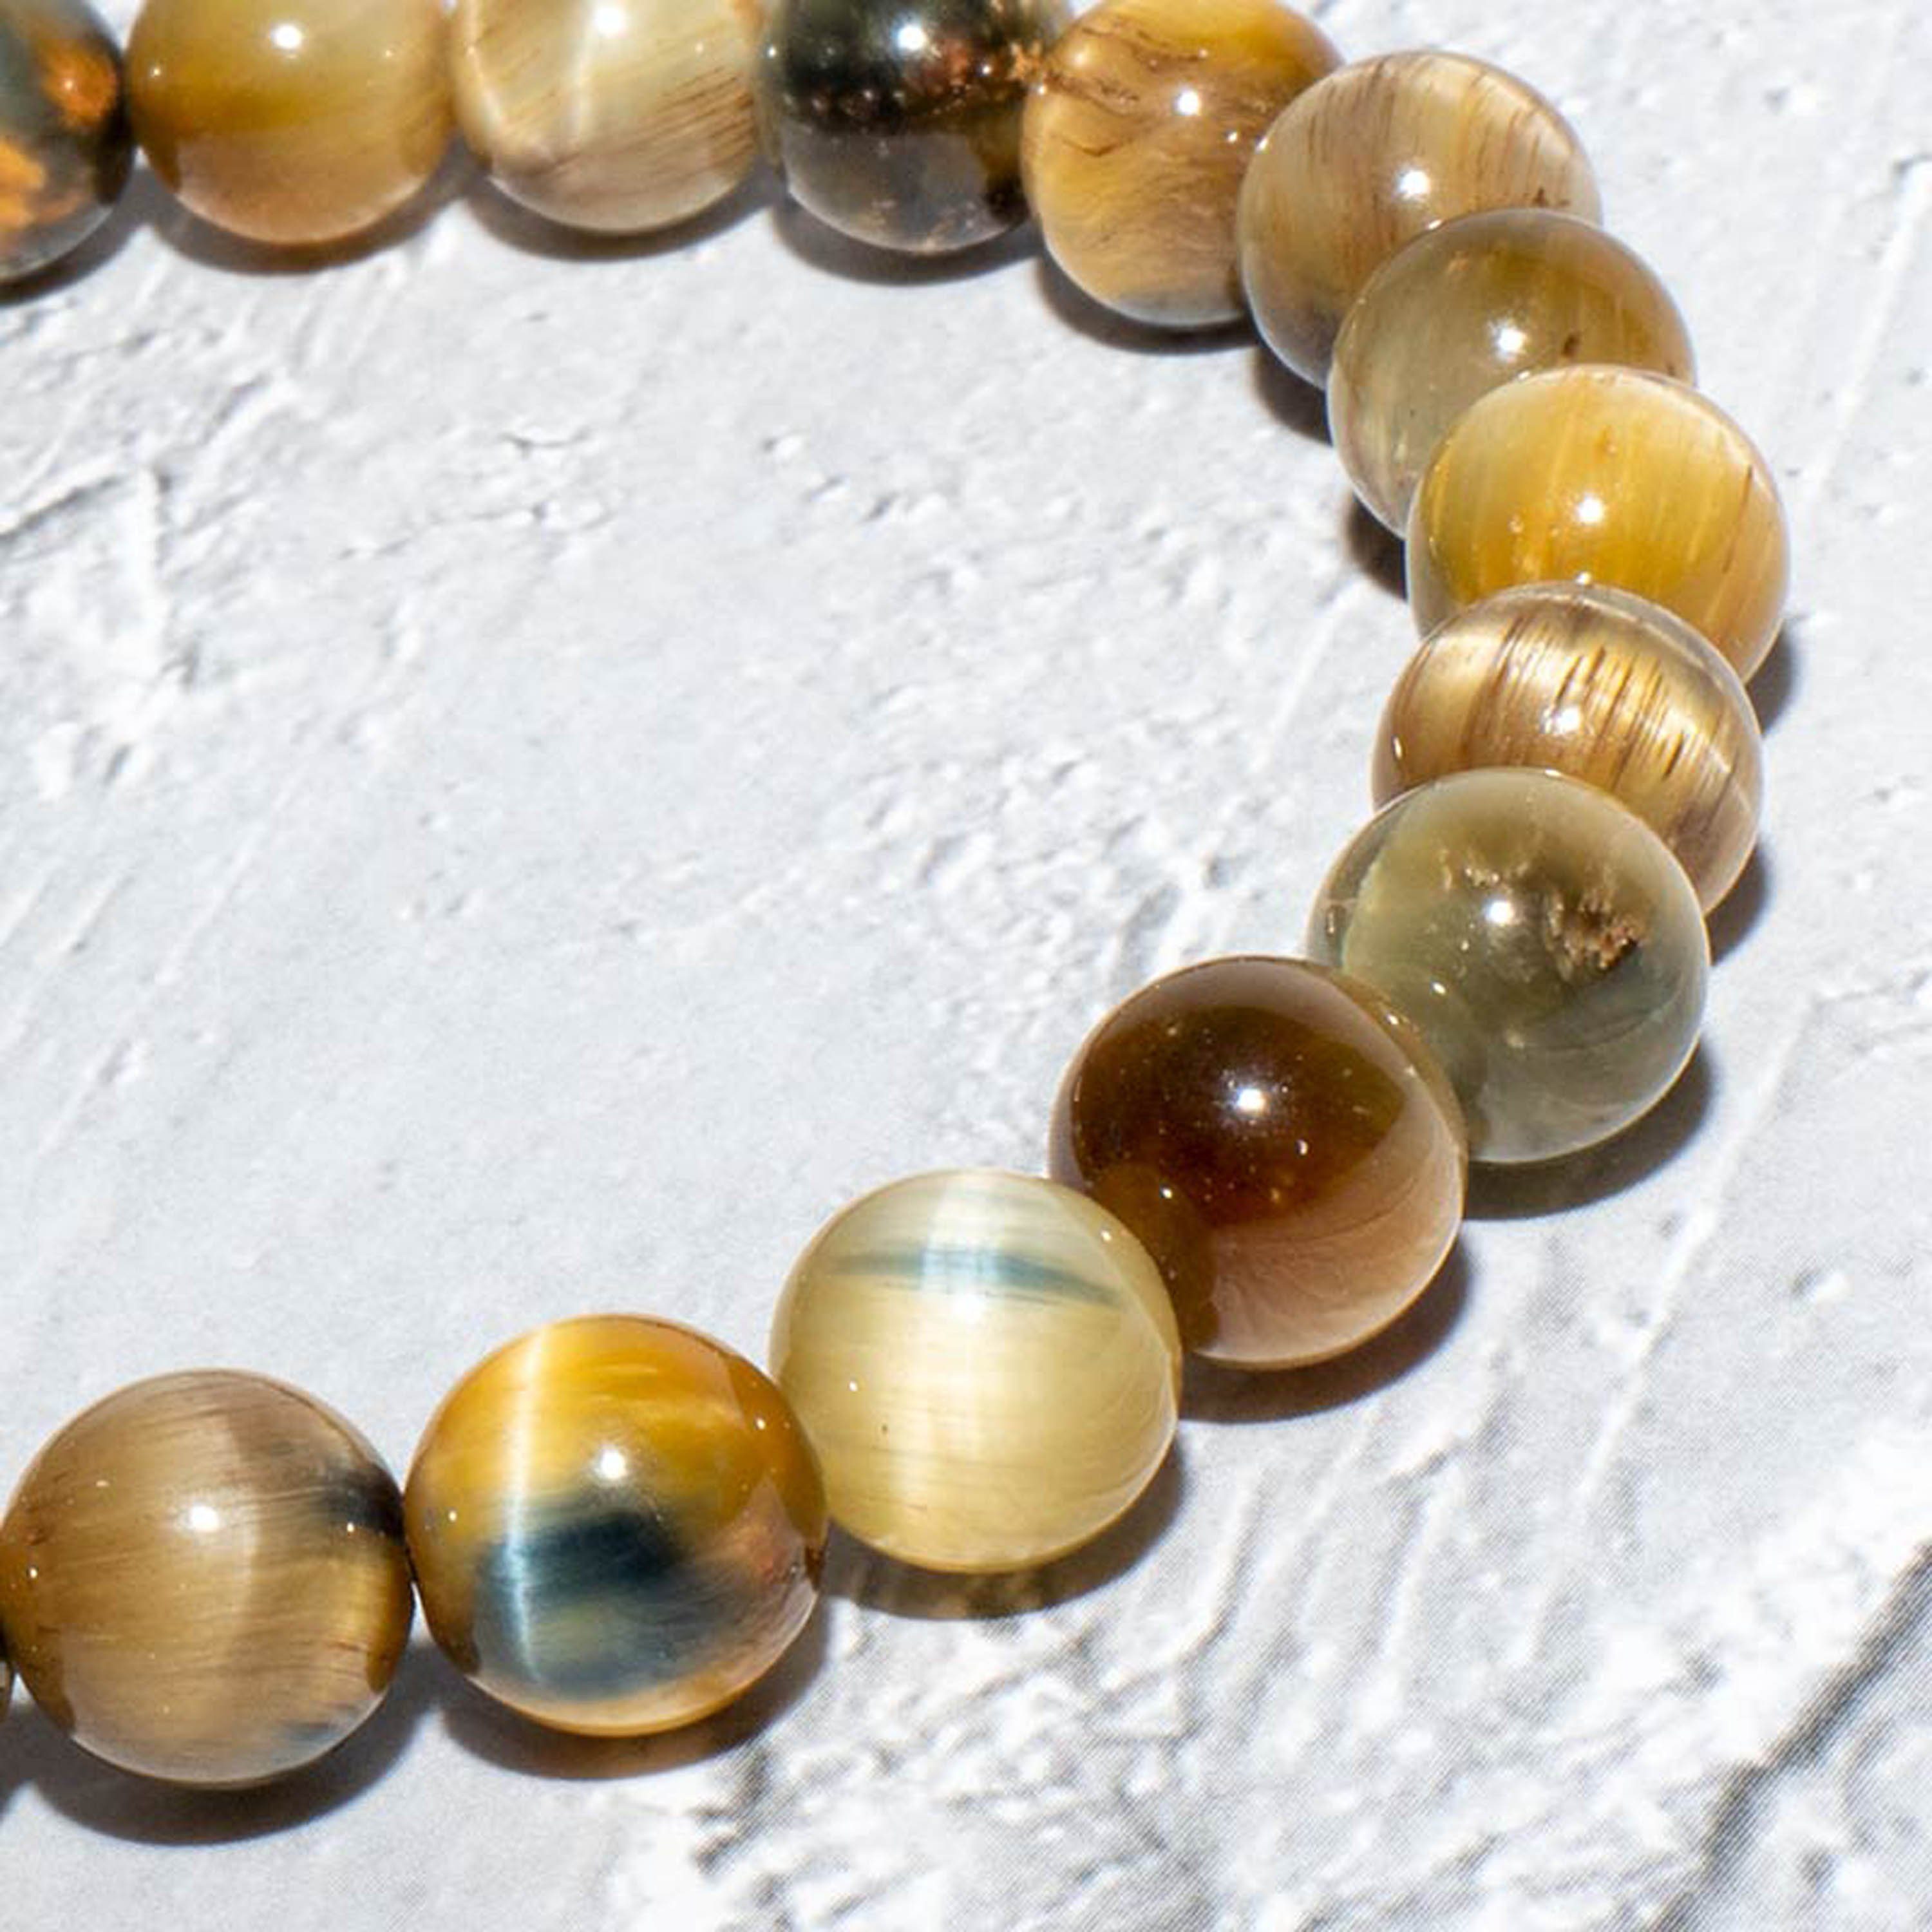 UNIQAL.de Perlenarmband Perlenrmband Naturstein, unisex Casual Heilstein, (Edelstahl, verstellbar, Mix Achat Naturstein, handgefertigt) Heilstein, "UNIQAL" Style